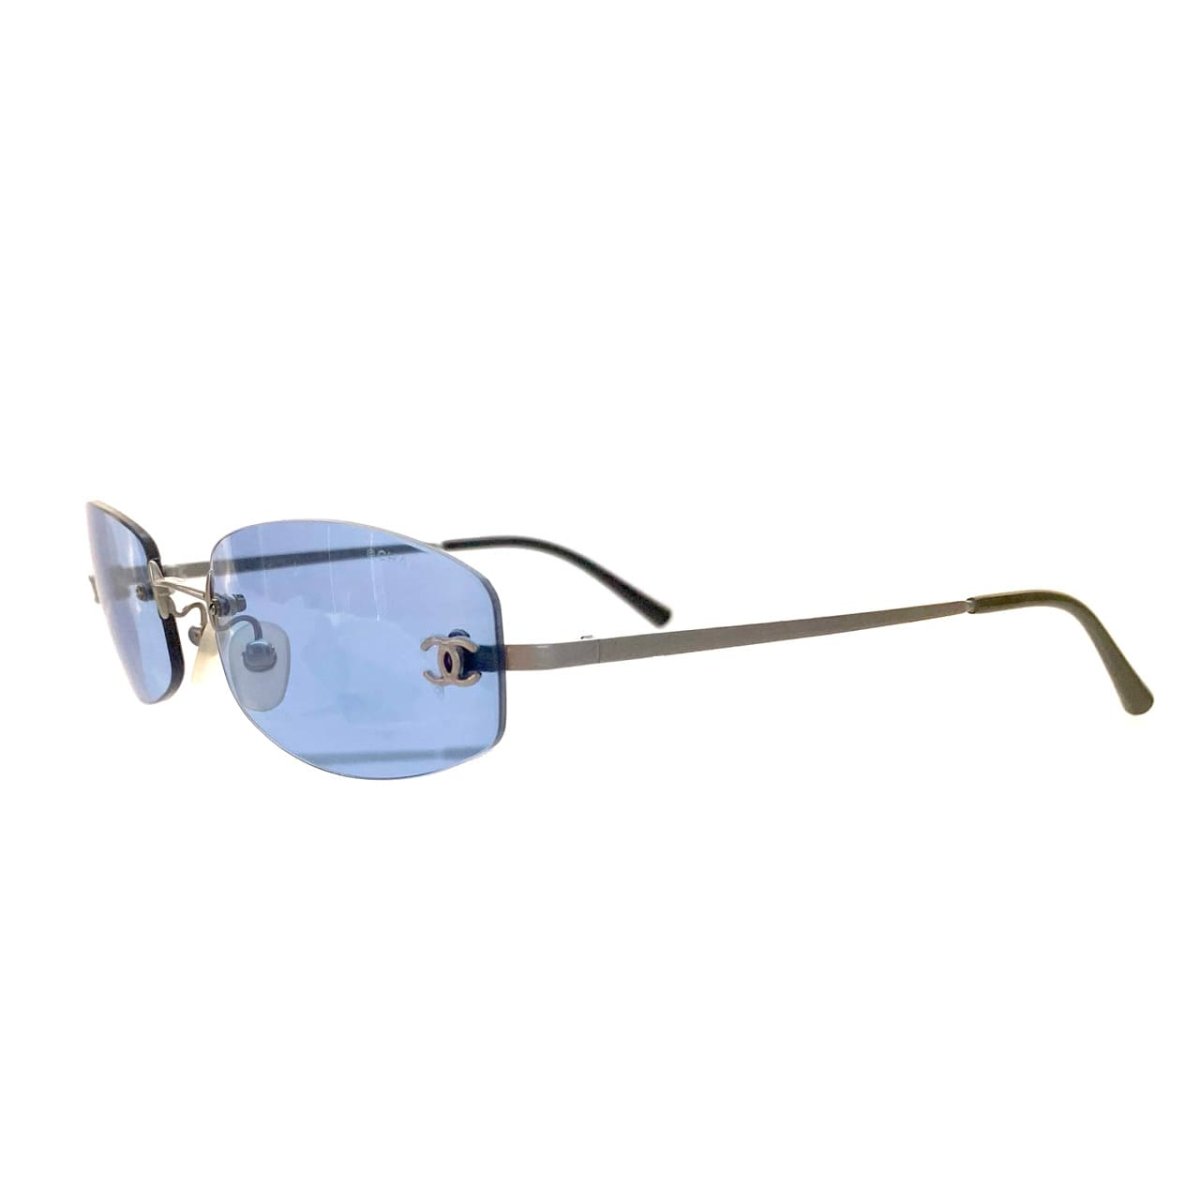 CHANEL シャネル サングラス CHANEL Sunglasses /23062105 - LAYER VINTAGE